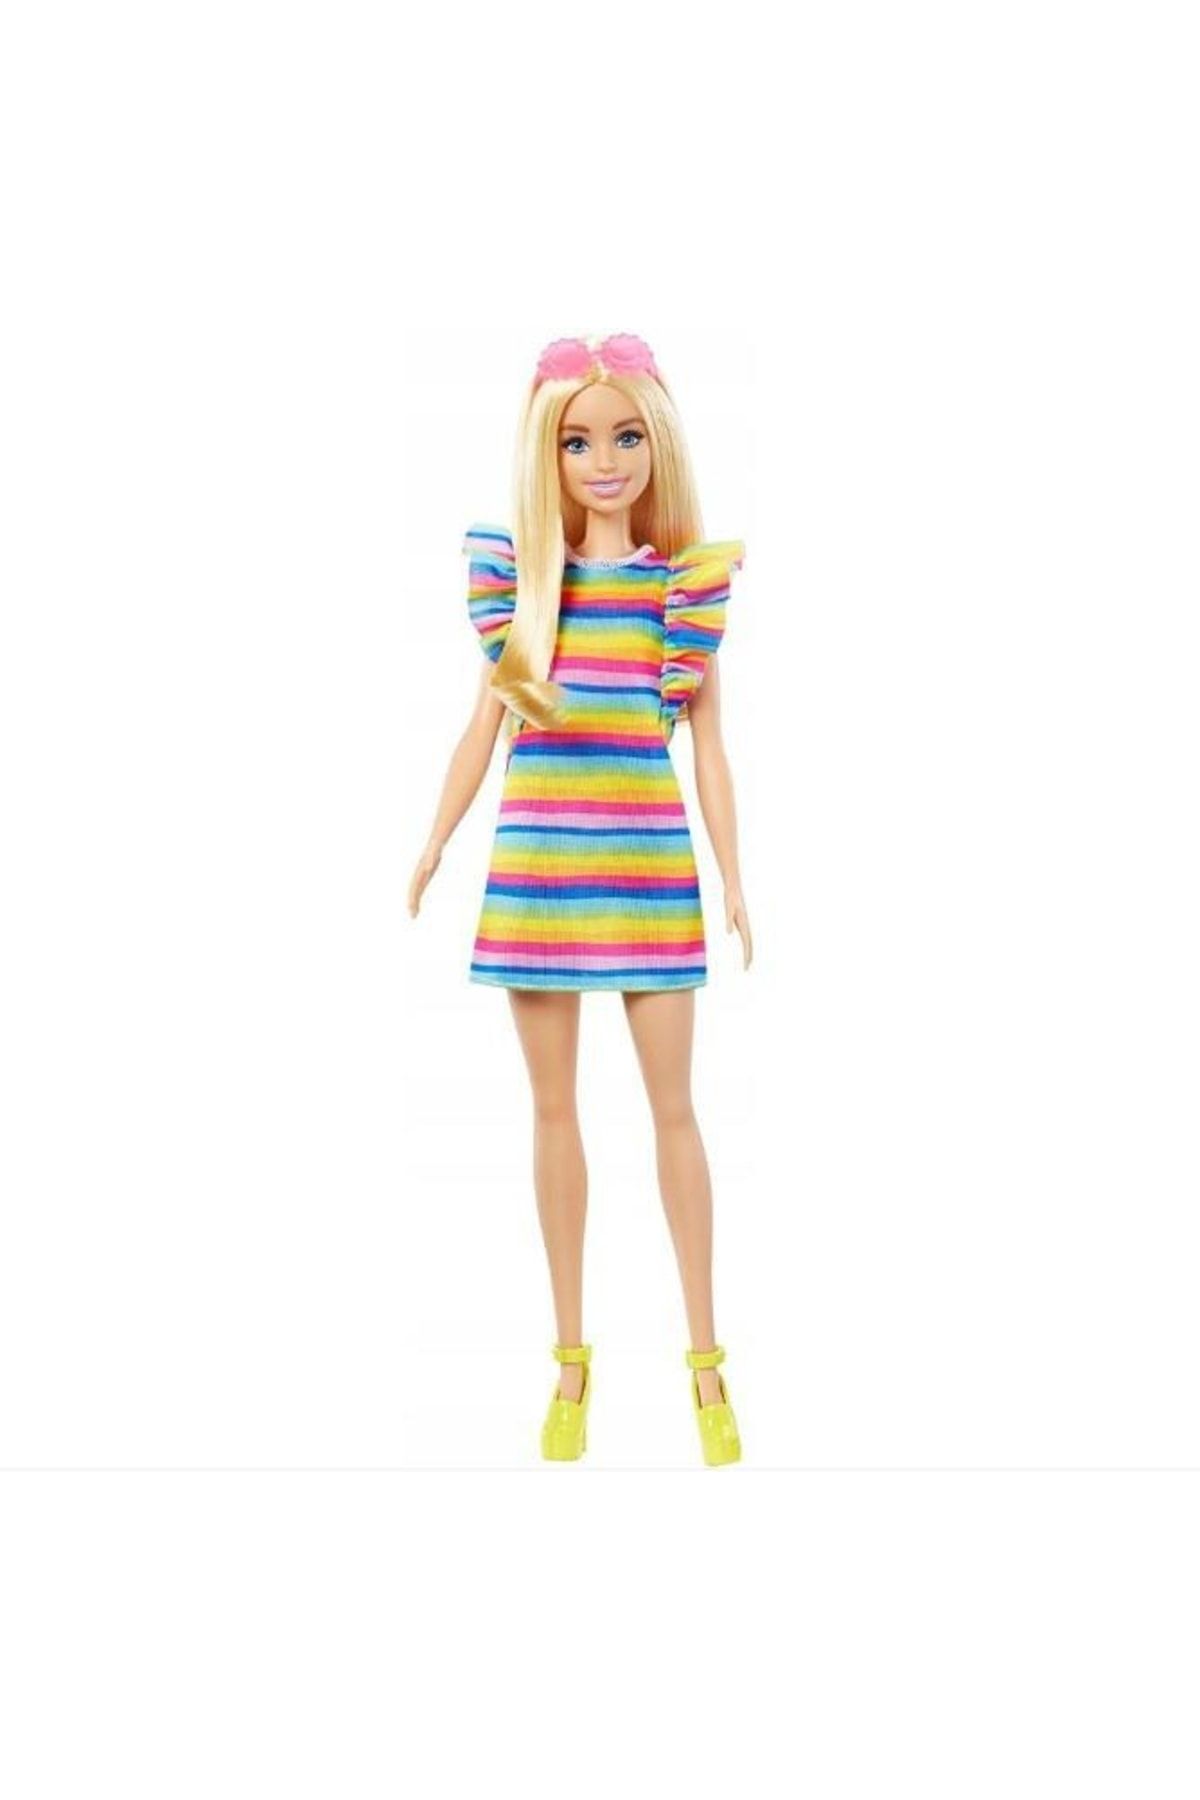 Barbie Fashionistas Koleksiyon Bebeği Fbr37 Hpf73 Lisanslı Ürün